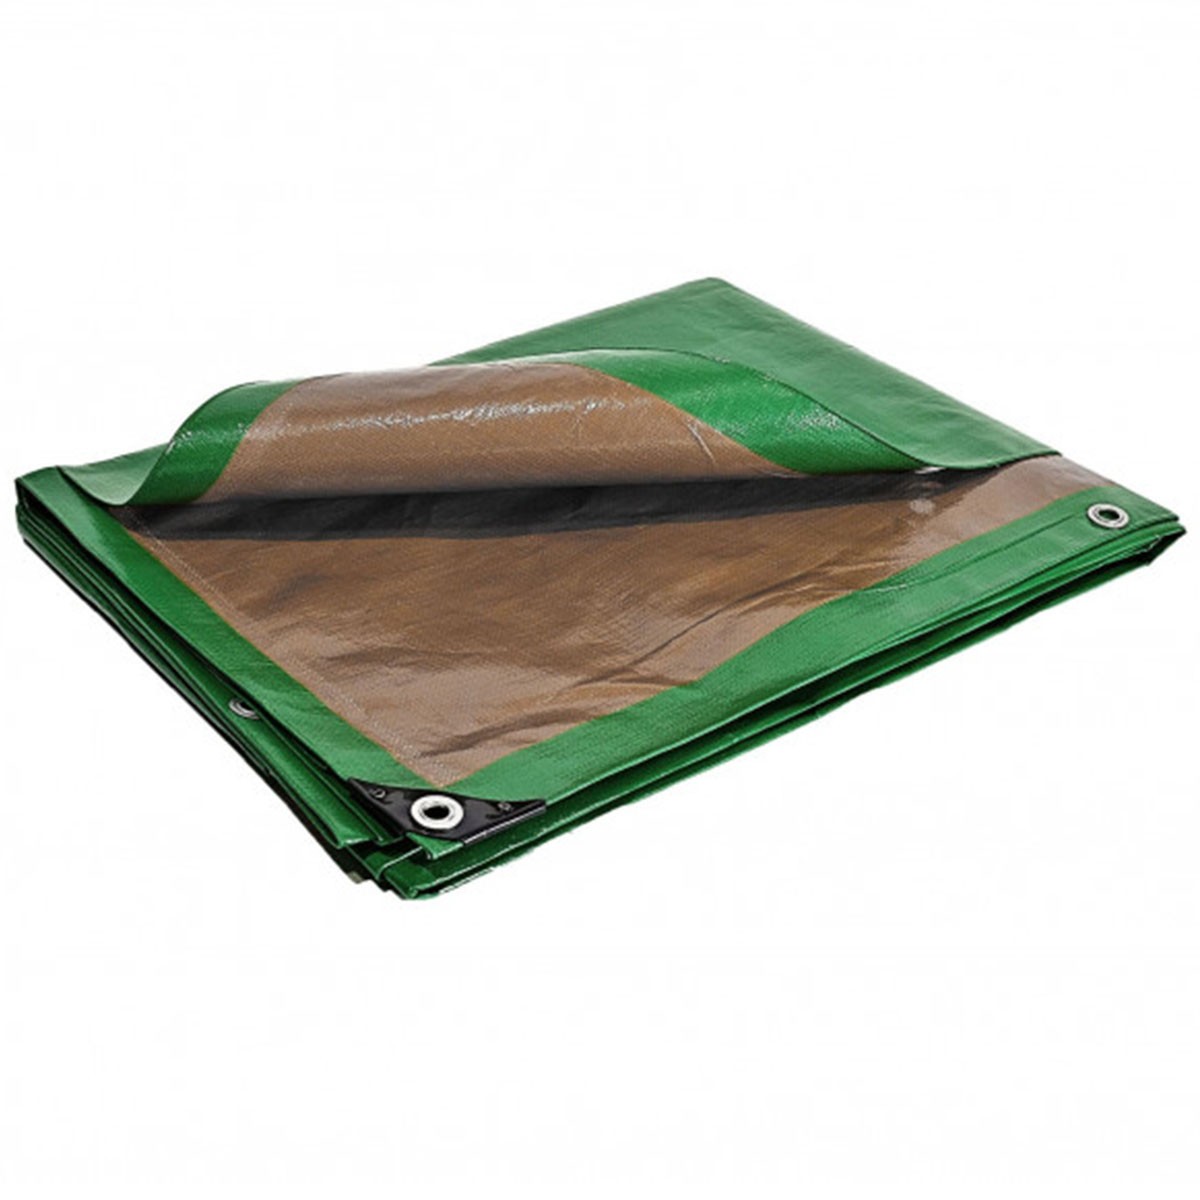 Bâche plastique verte et marron 250g /m² - bâche de protection 8x12 m